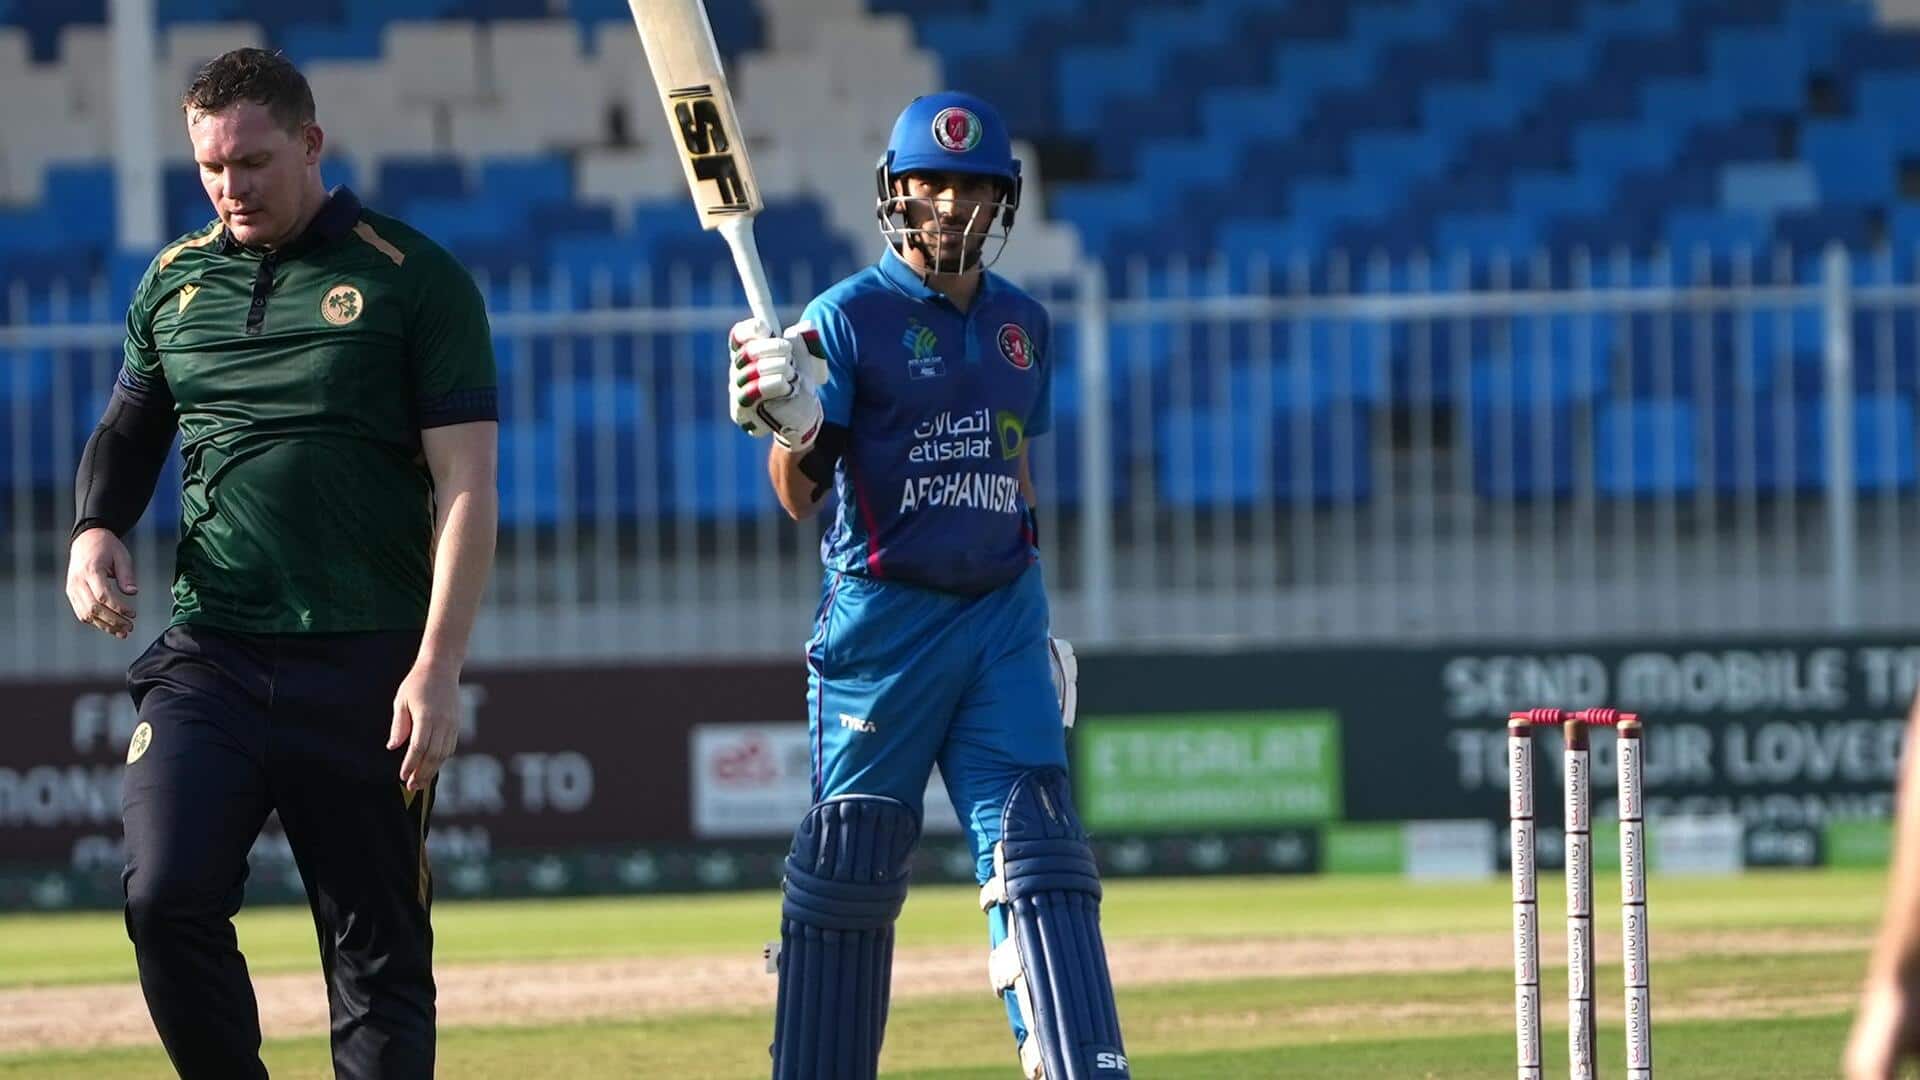 तीसरा वनडे: रहमनुल्लाह गुरबाज ने आयरलैंड के खिलाफ जड़ा पहला अर्धशतक, जानिए आंकड़े